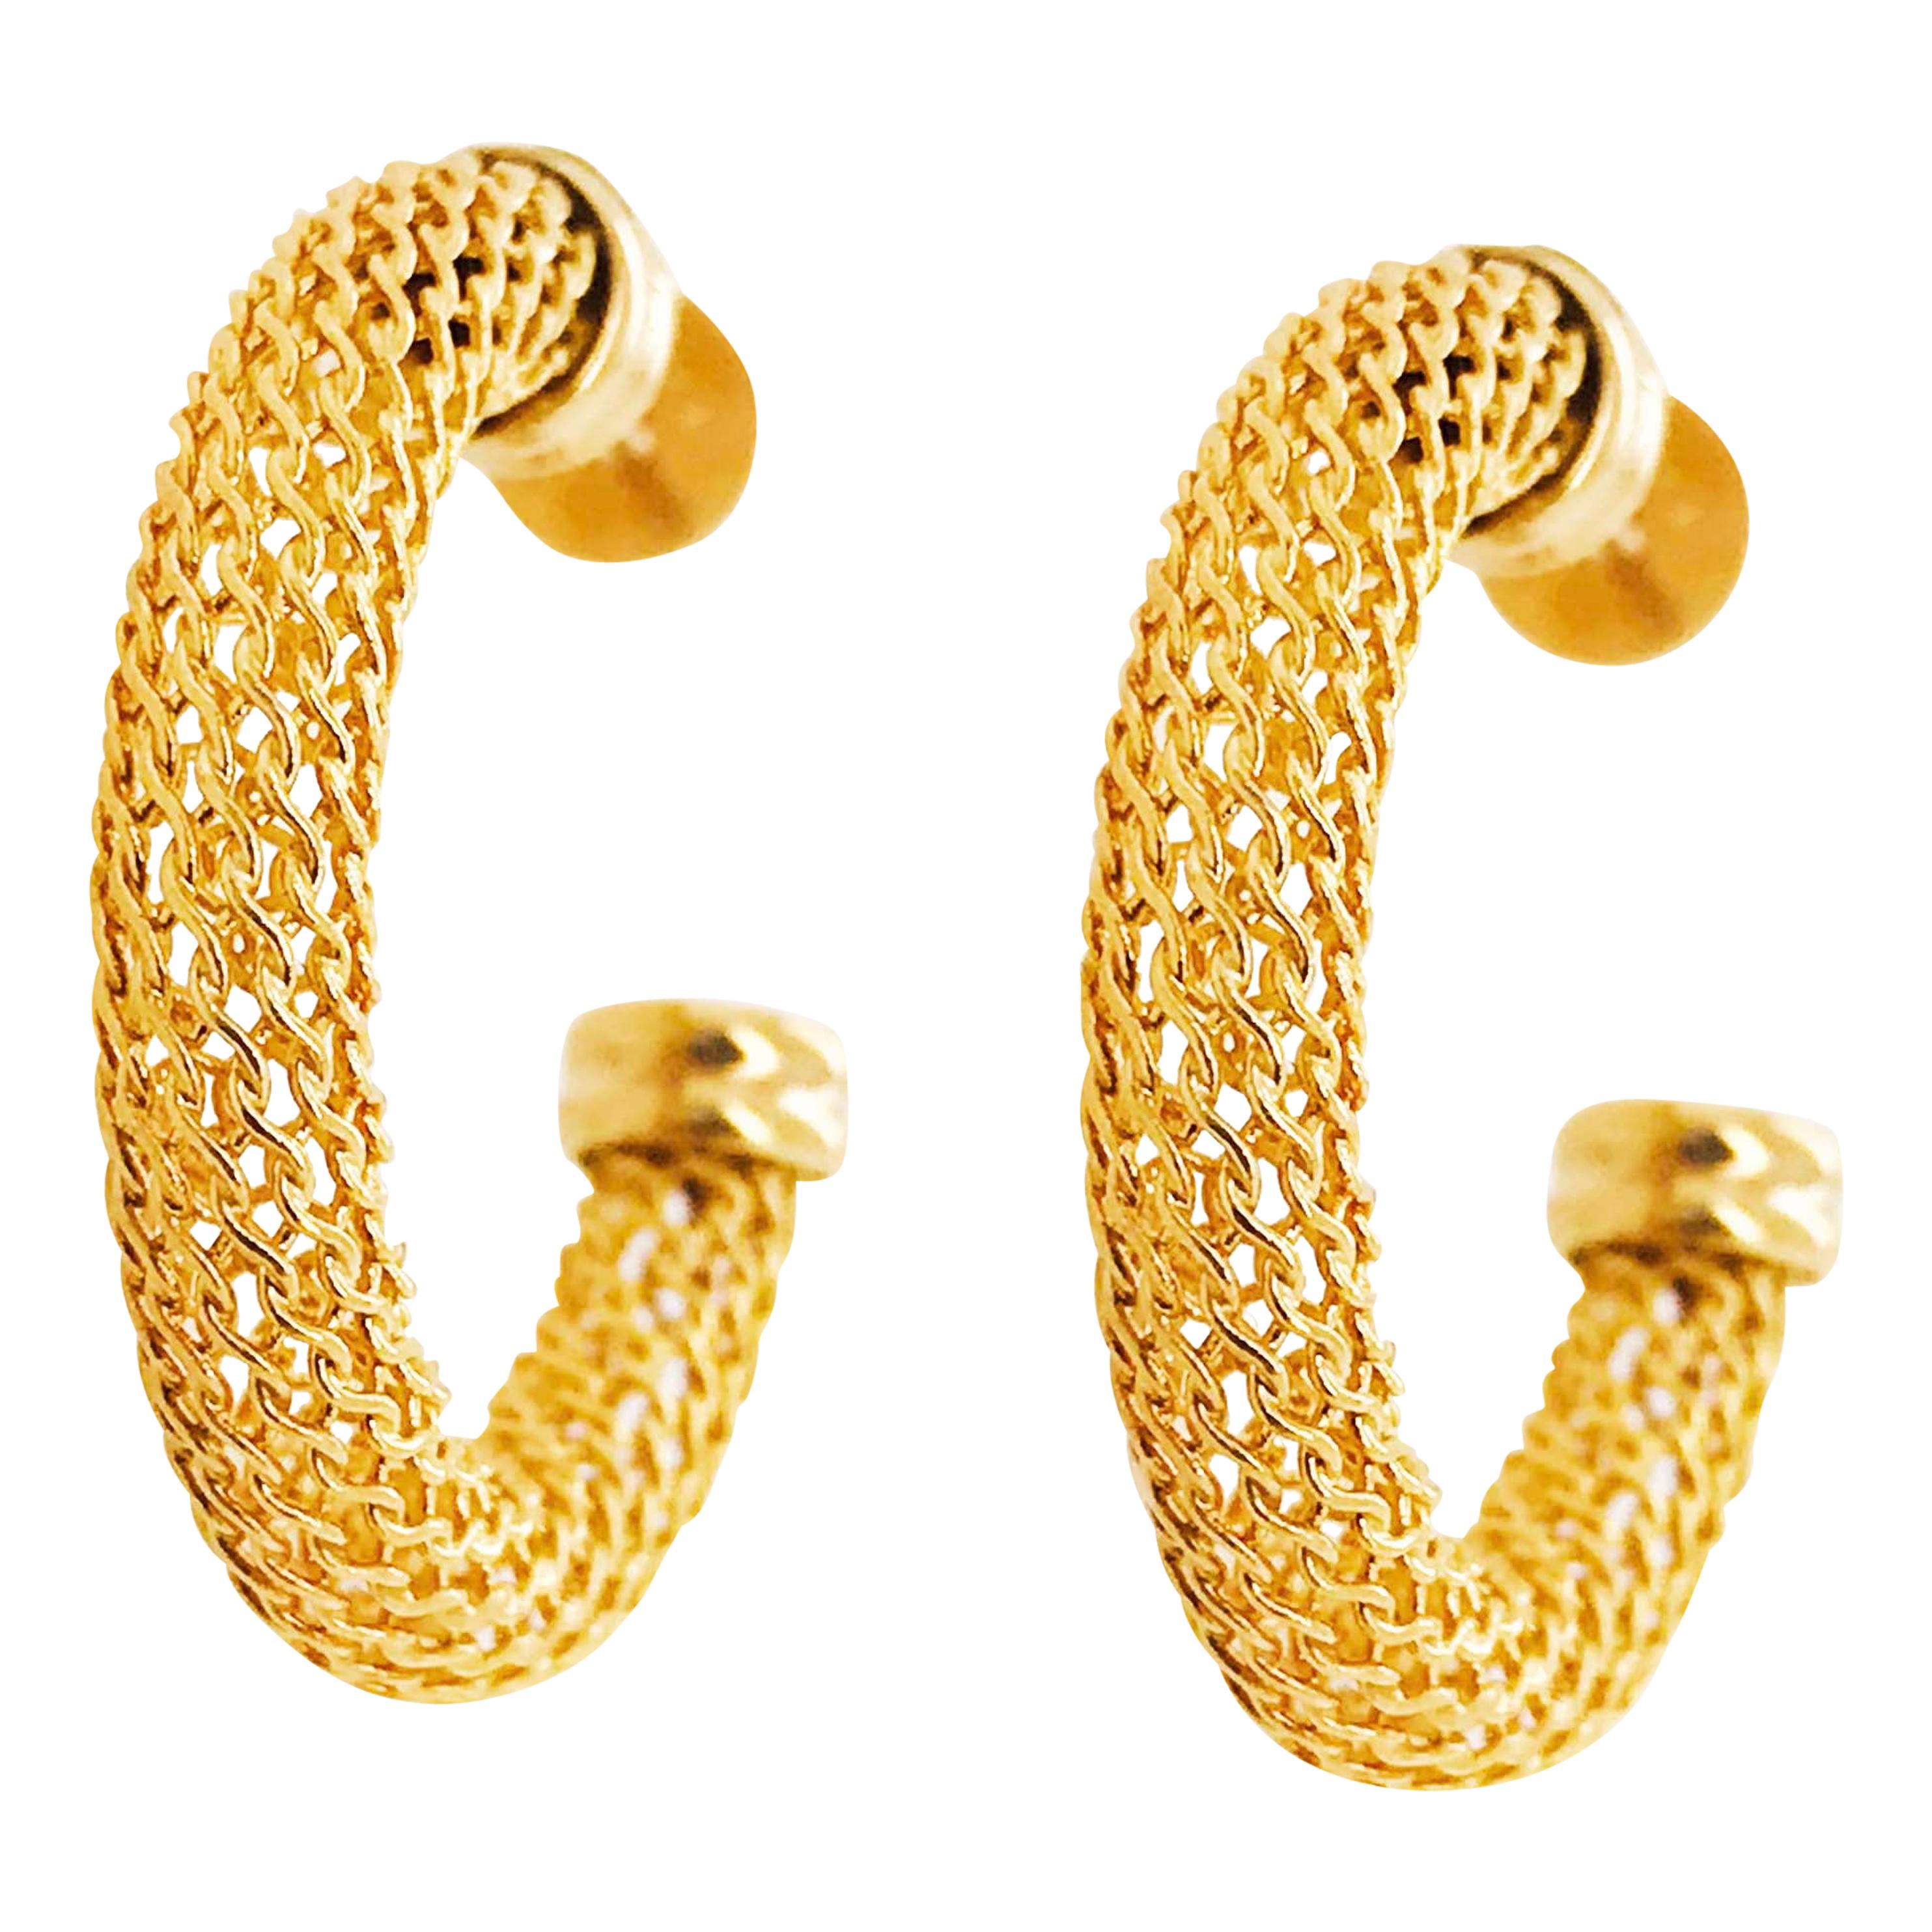 Gold Mesh Hoop Earrings, 14 Karat Gold Hoops with Custom Texture, Medium Hoops